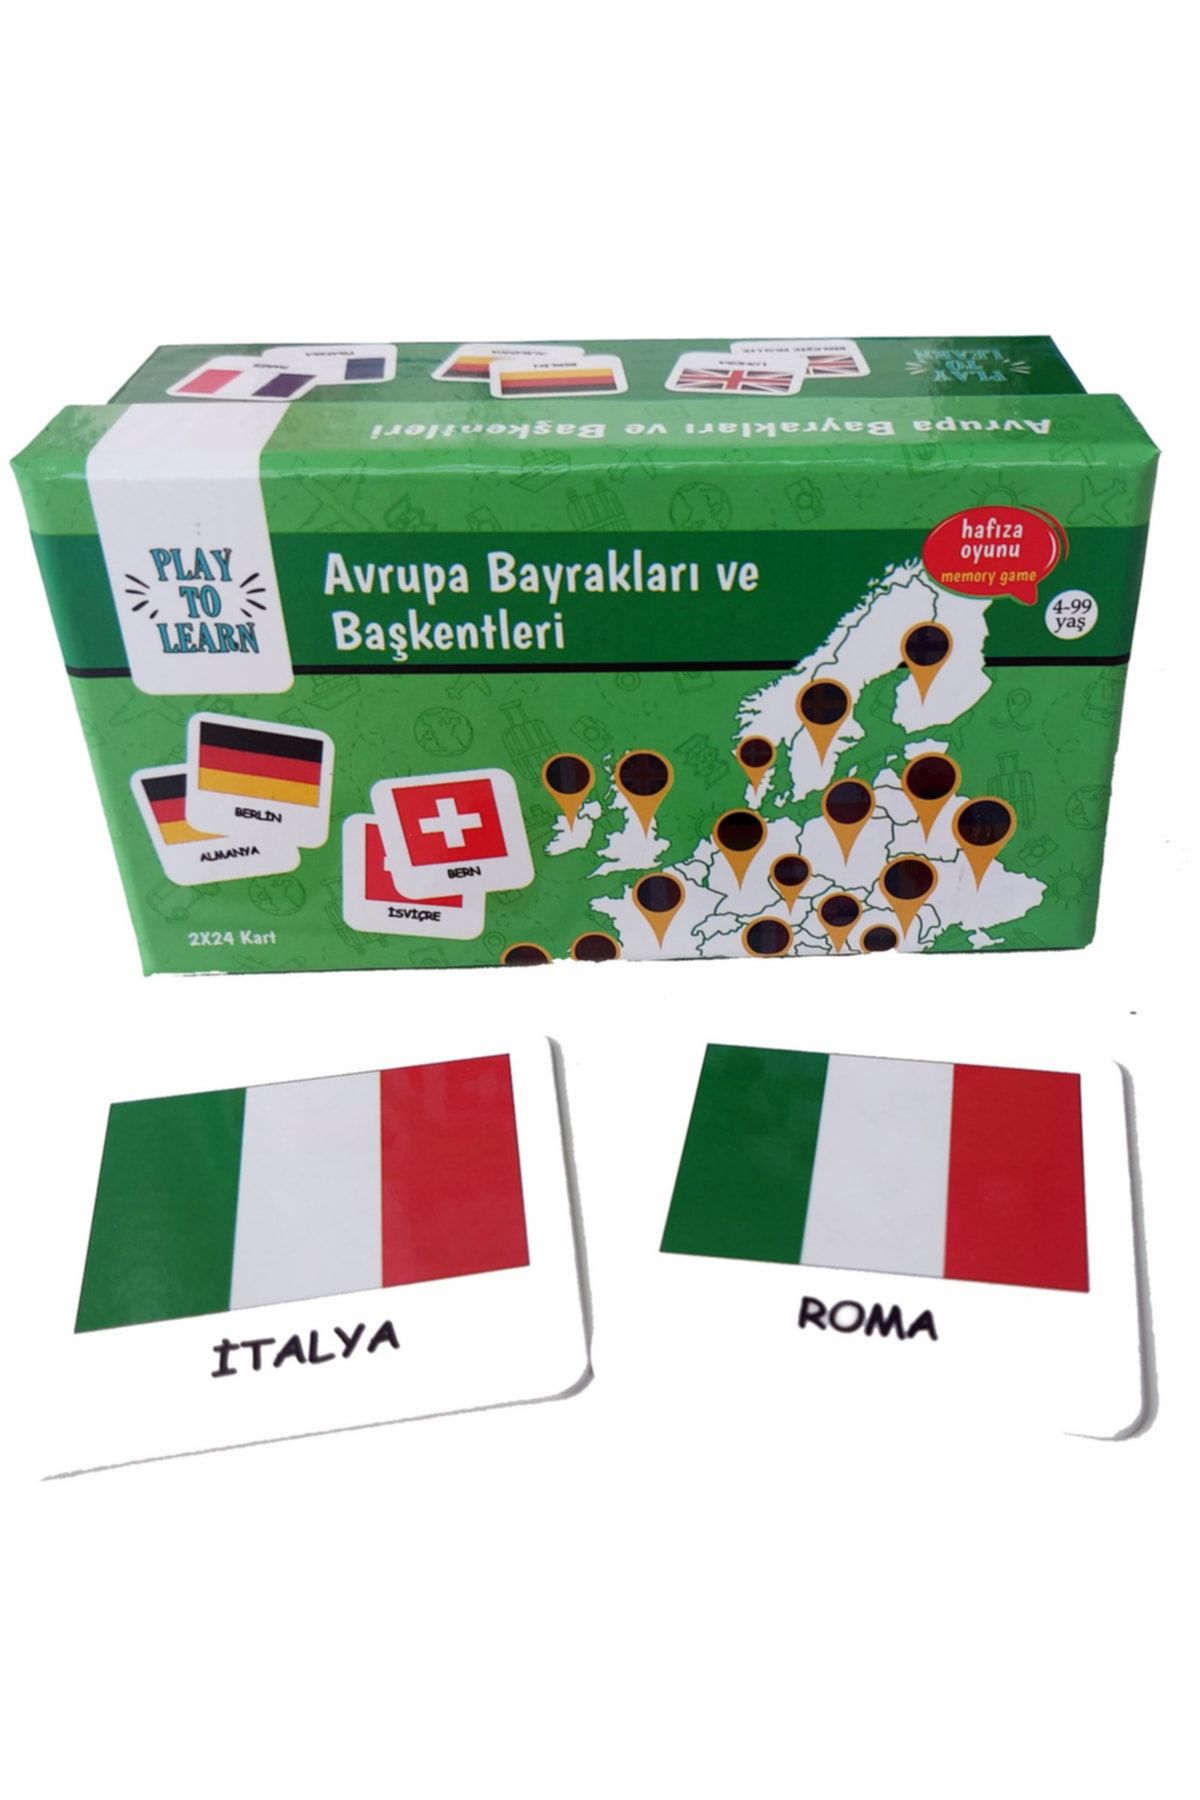 Play to Learn Avrupa Bayrakları Ve Başkentleri -genel Kültür Oyunu, Eğitici Kutu Oyunu, Dikkat Oyunu, Hafiza Oyunu